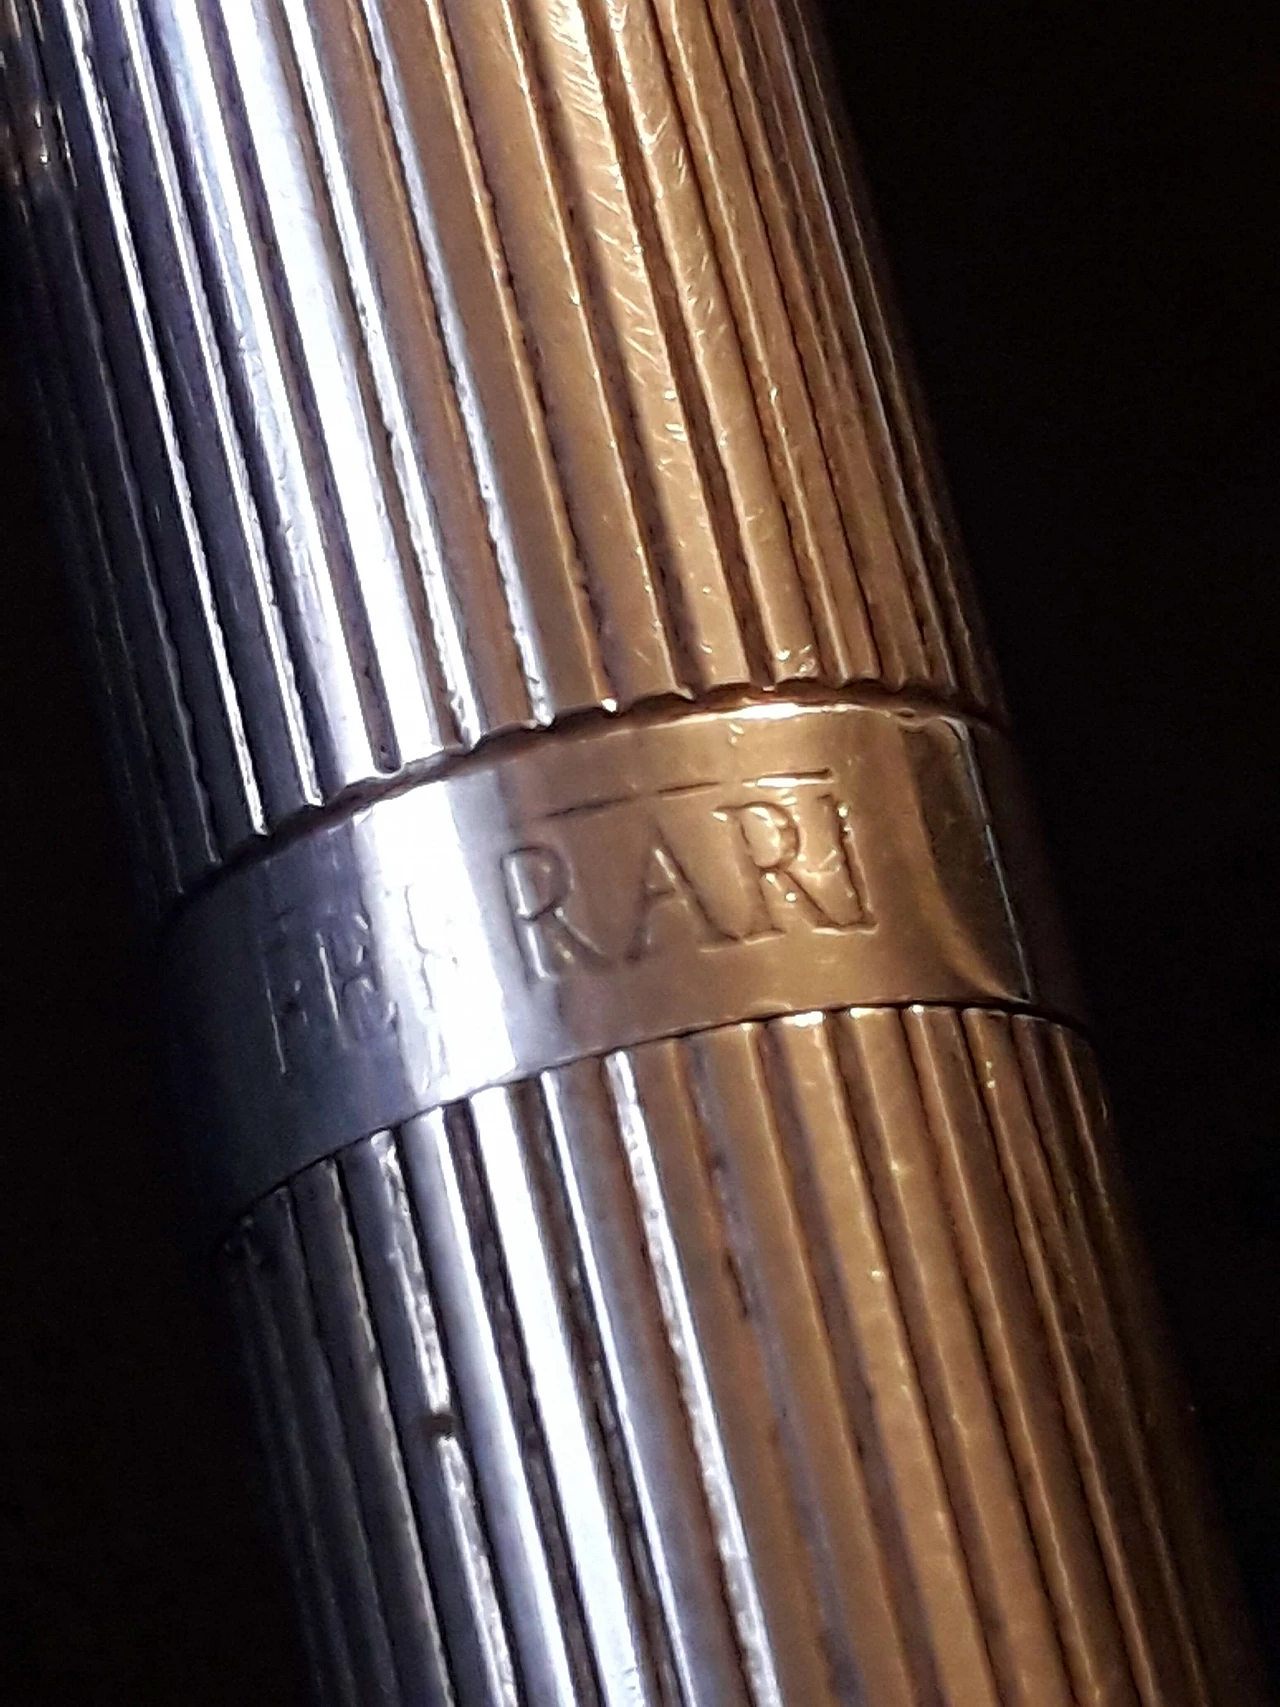 Ferrari silver stylographic pen 1177964